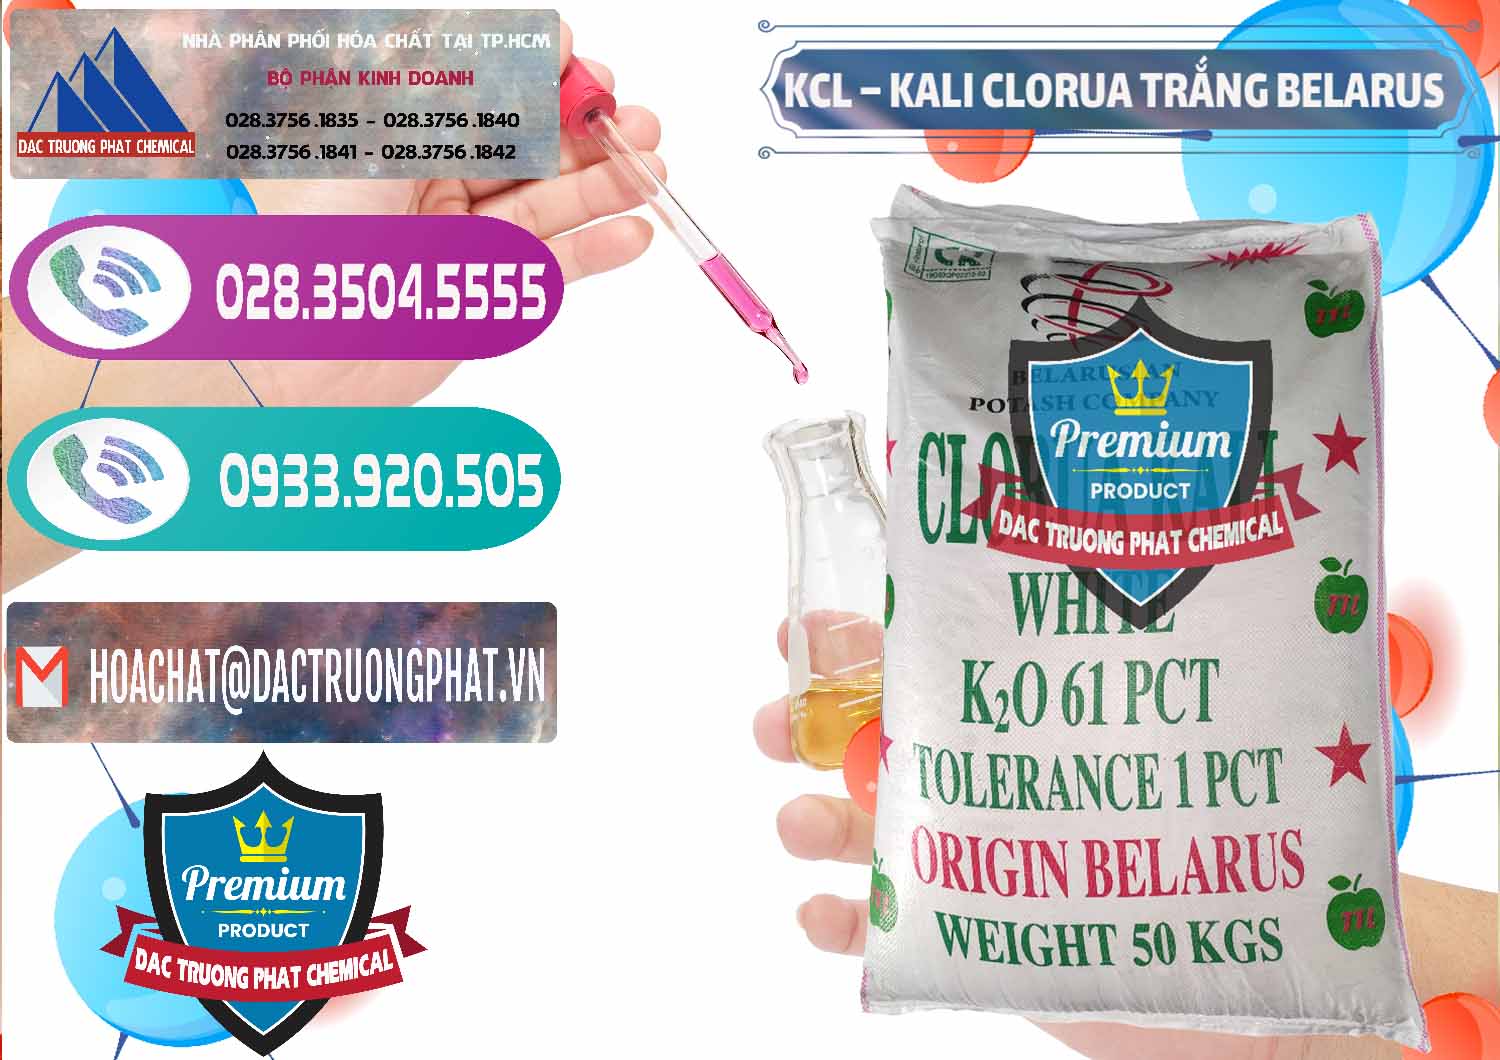 Nơi chuyên phân phối - bán KCL – Kali Clorua Trắng Belarus - 0085 - Chuyên bán - cung cấp hóa chất tại TP.HCM - hoachatxulynuoc.com